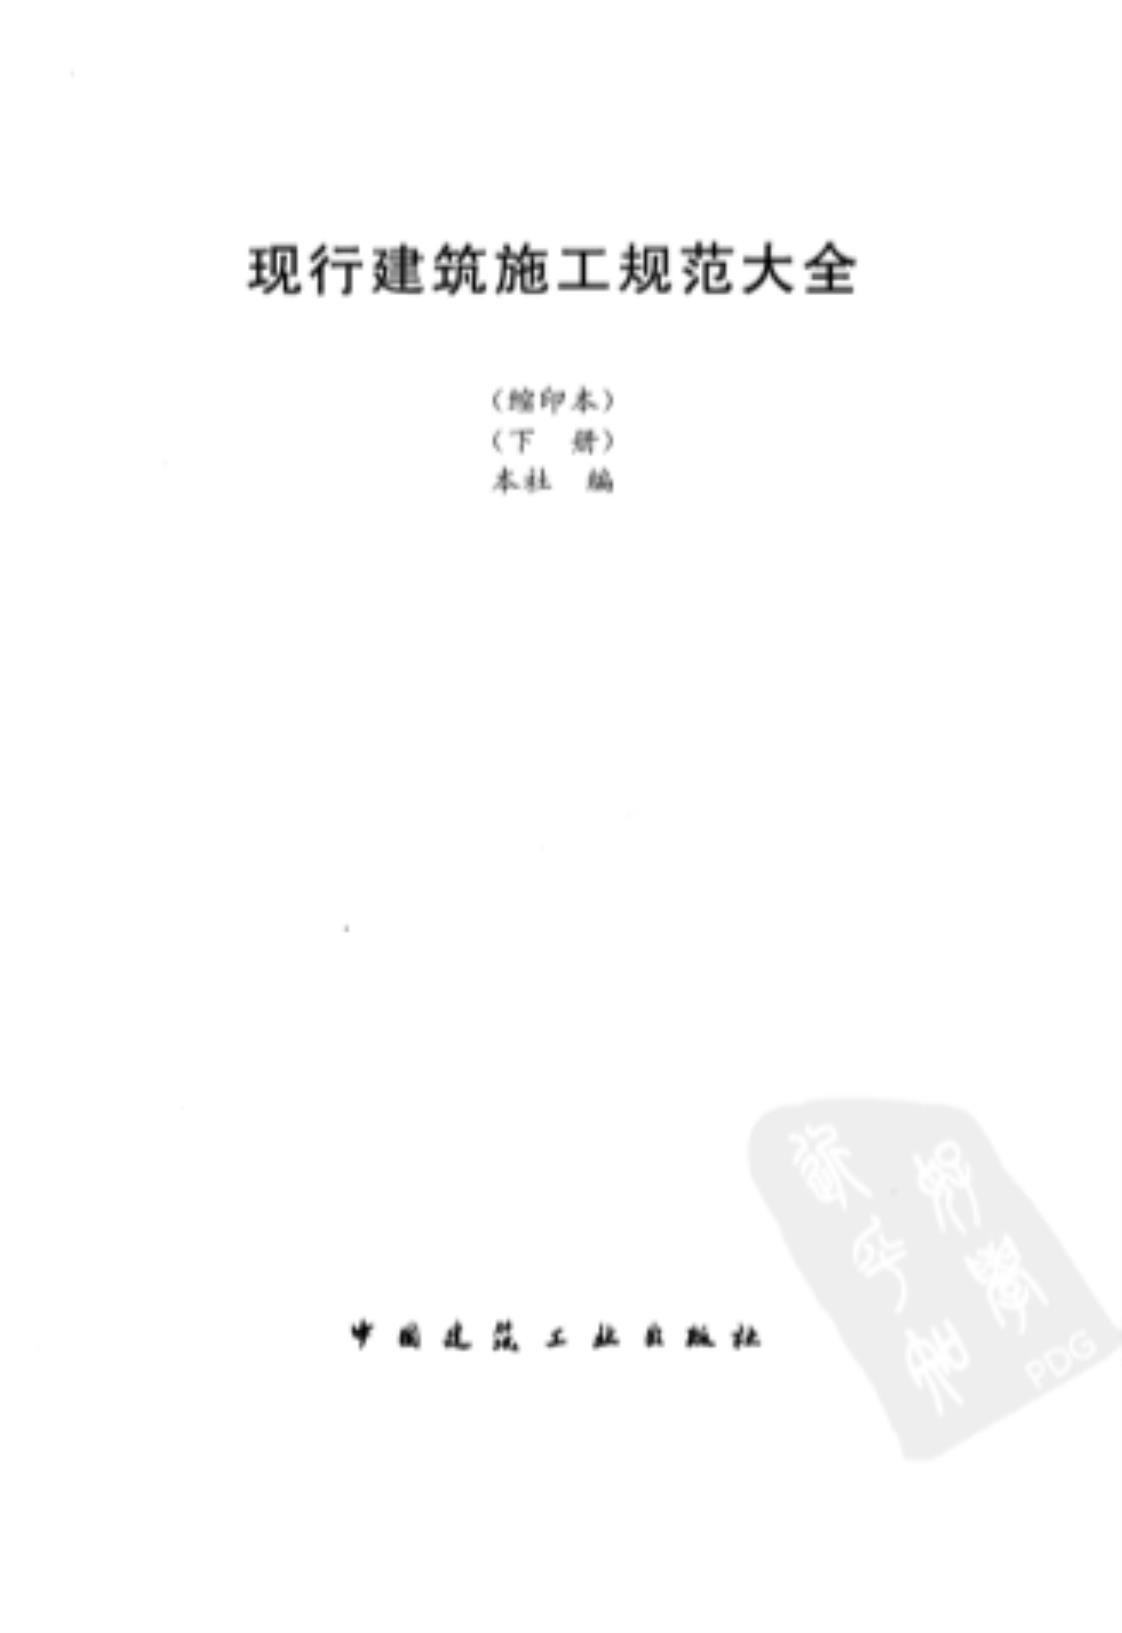 [现行建筑施工规范大全(上、下册)][王春华(著)]高清PDF电子书